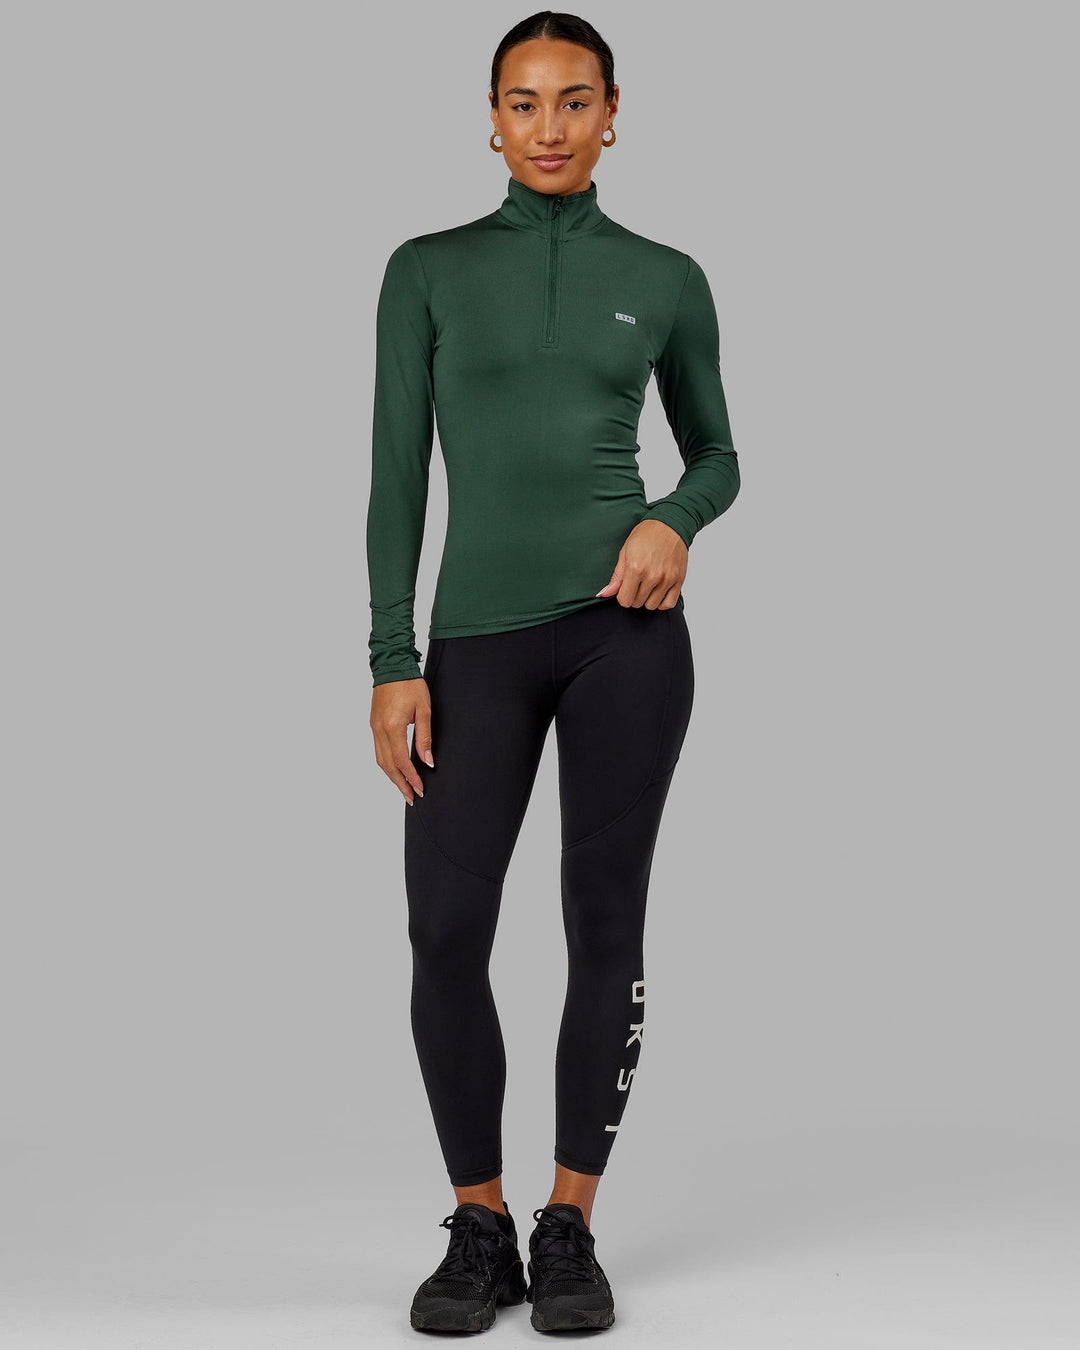 Woman wearing Streamlined 1/4 Zip LS Tee - Vital Green